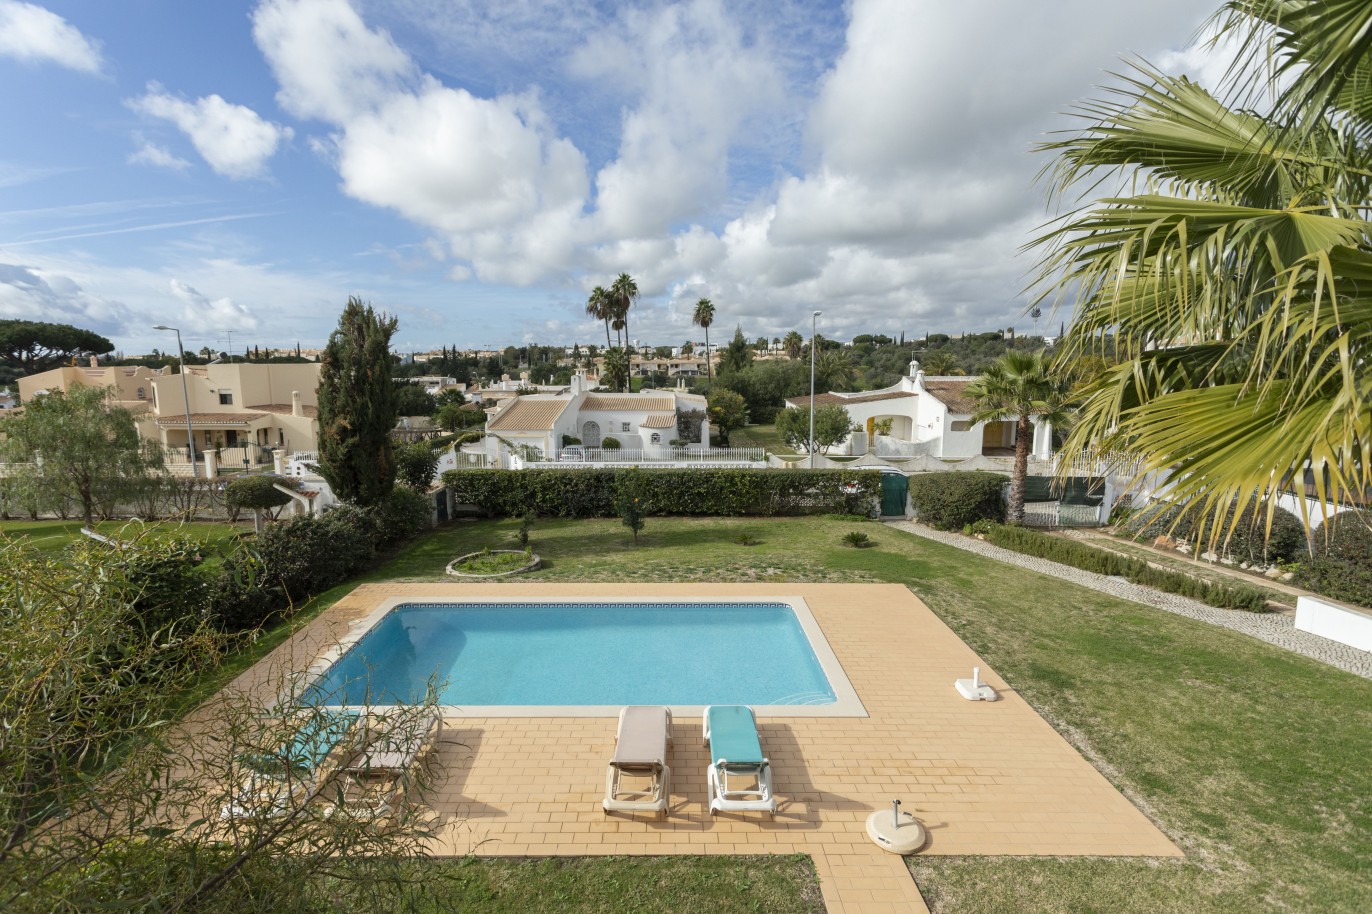 Moradia independente T3 com piscina, para venda em Vilamoura, Algarve_248840